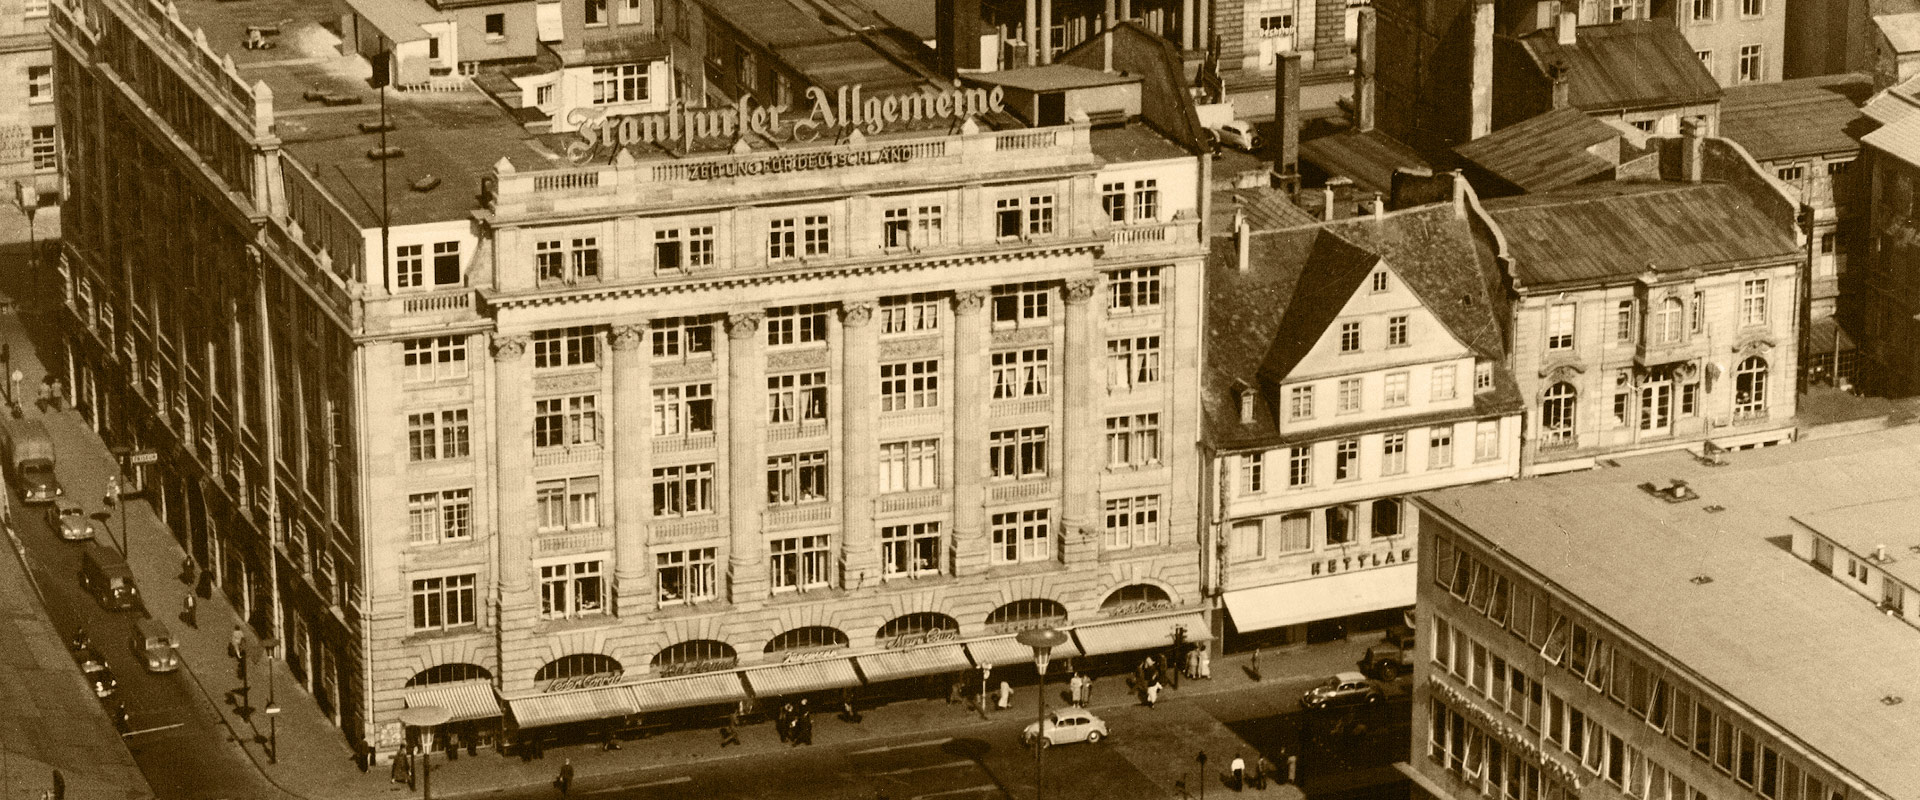 Ehemaliges F.A.Z.-Gebäude in der Börsenstraße